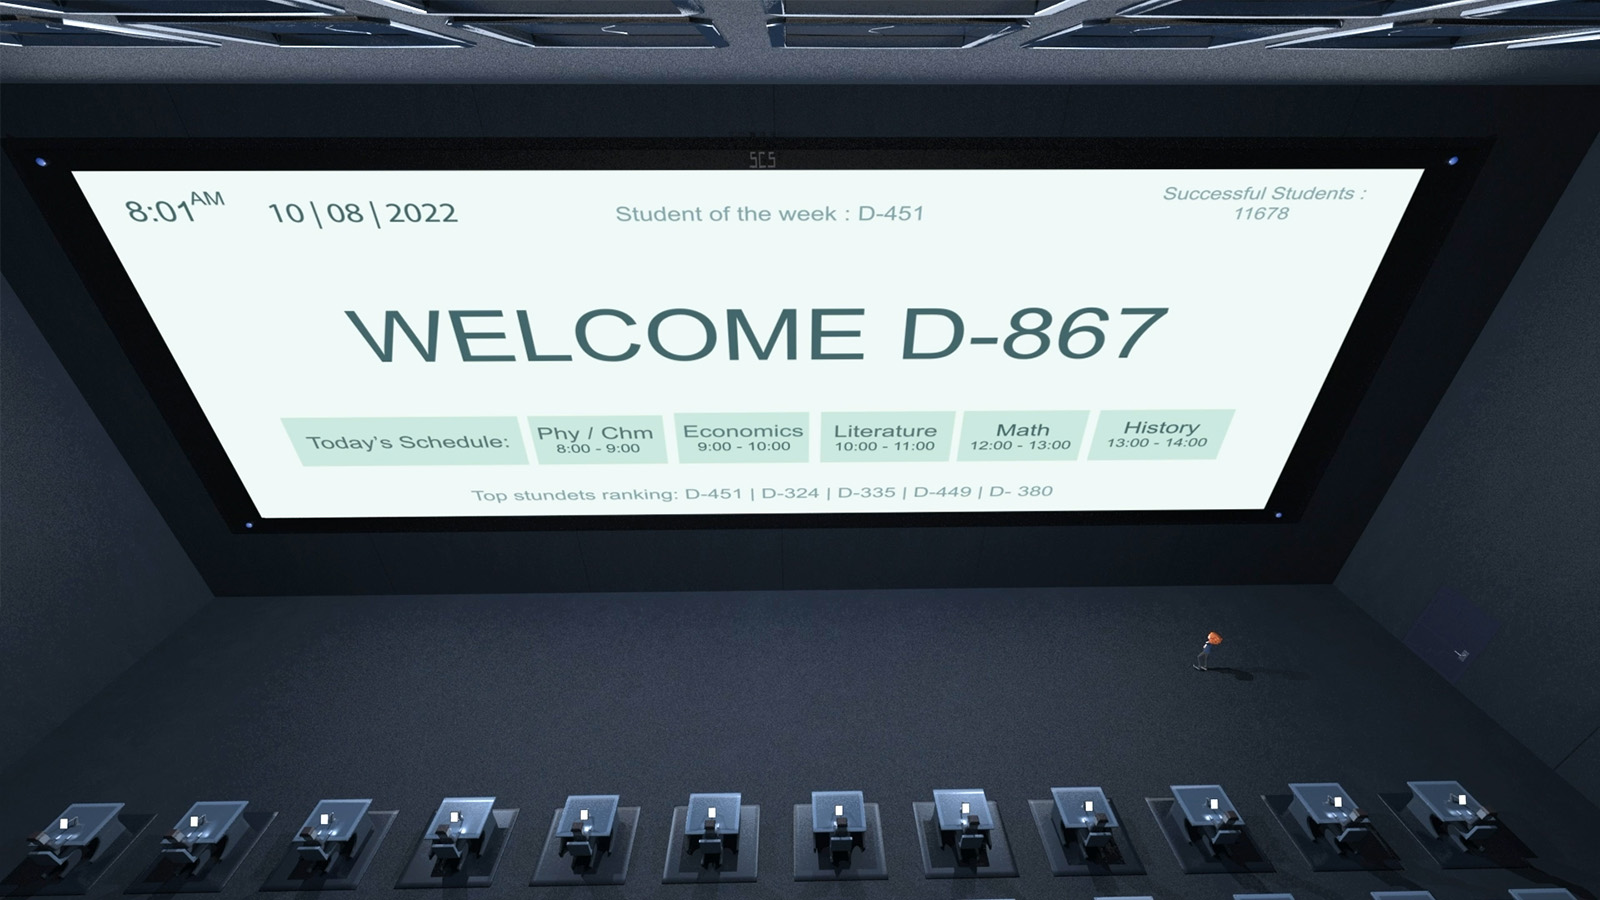 Una pantalla gigante está iluminada y tiene escrito "bienvenido d-867"